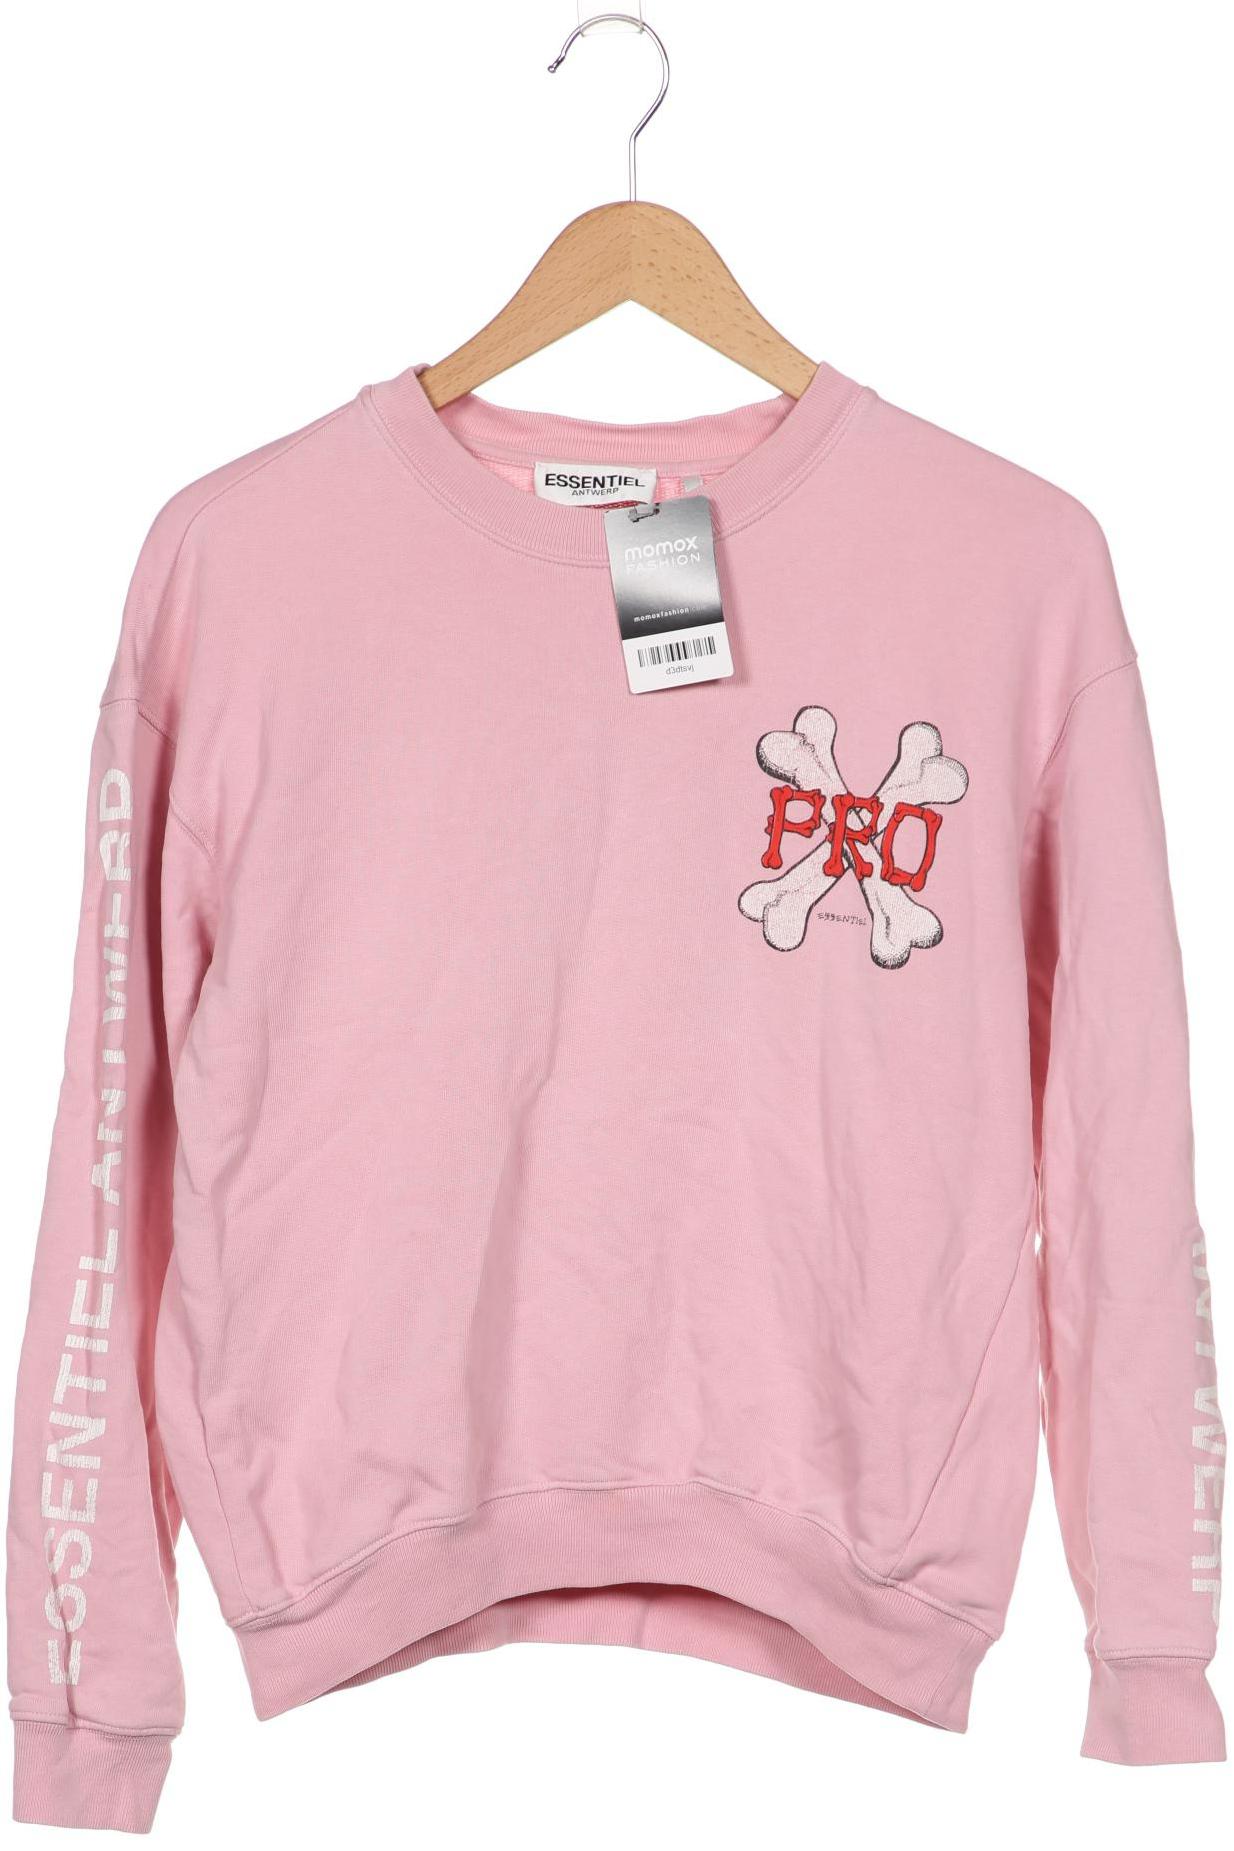 Essentiel Antwerp Damen Sweatshirt, pink, Gr. 38 von Essentiel Antwerp